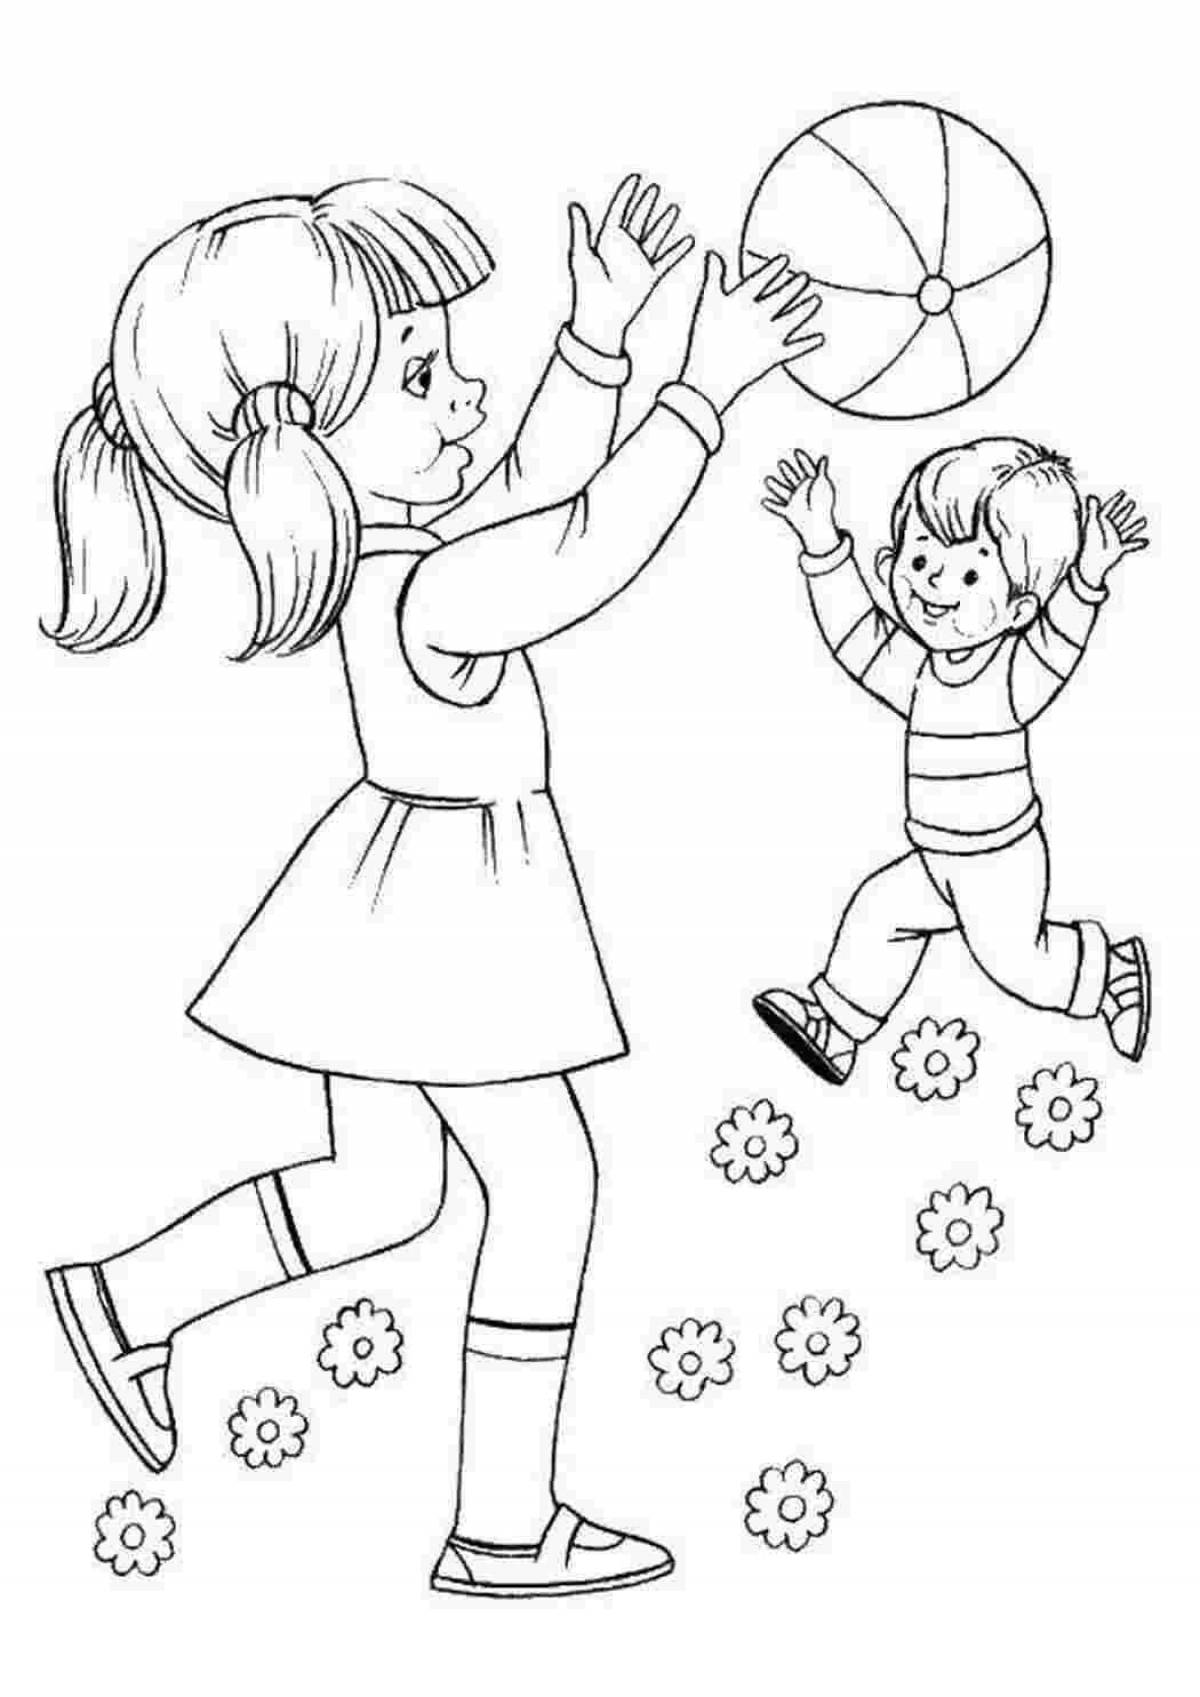 Нарисуй картинку играть. Раскраски для детей. Раскраска девочка с мячом. Дети раскраска для детей. Раскраска игра в мяч.